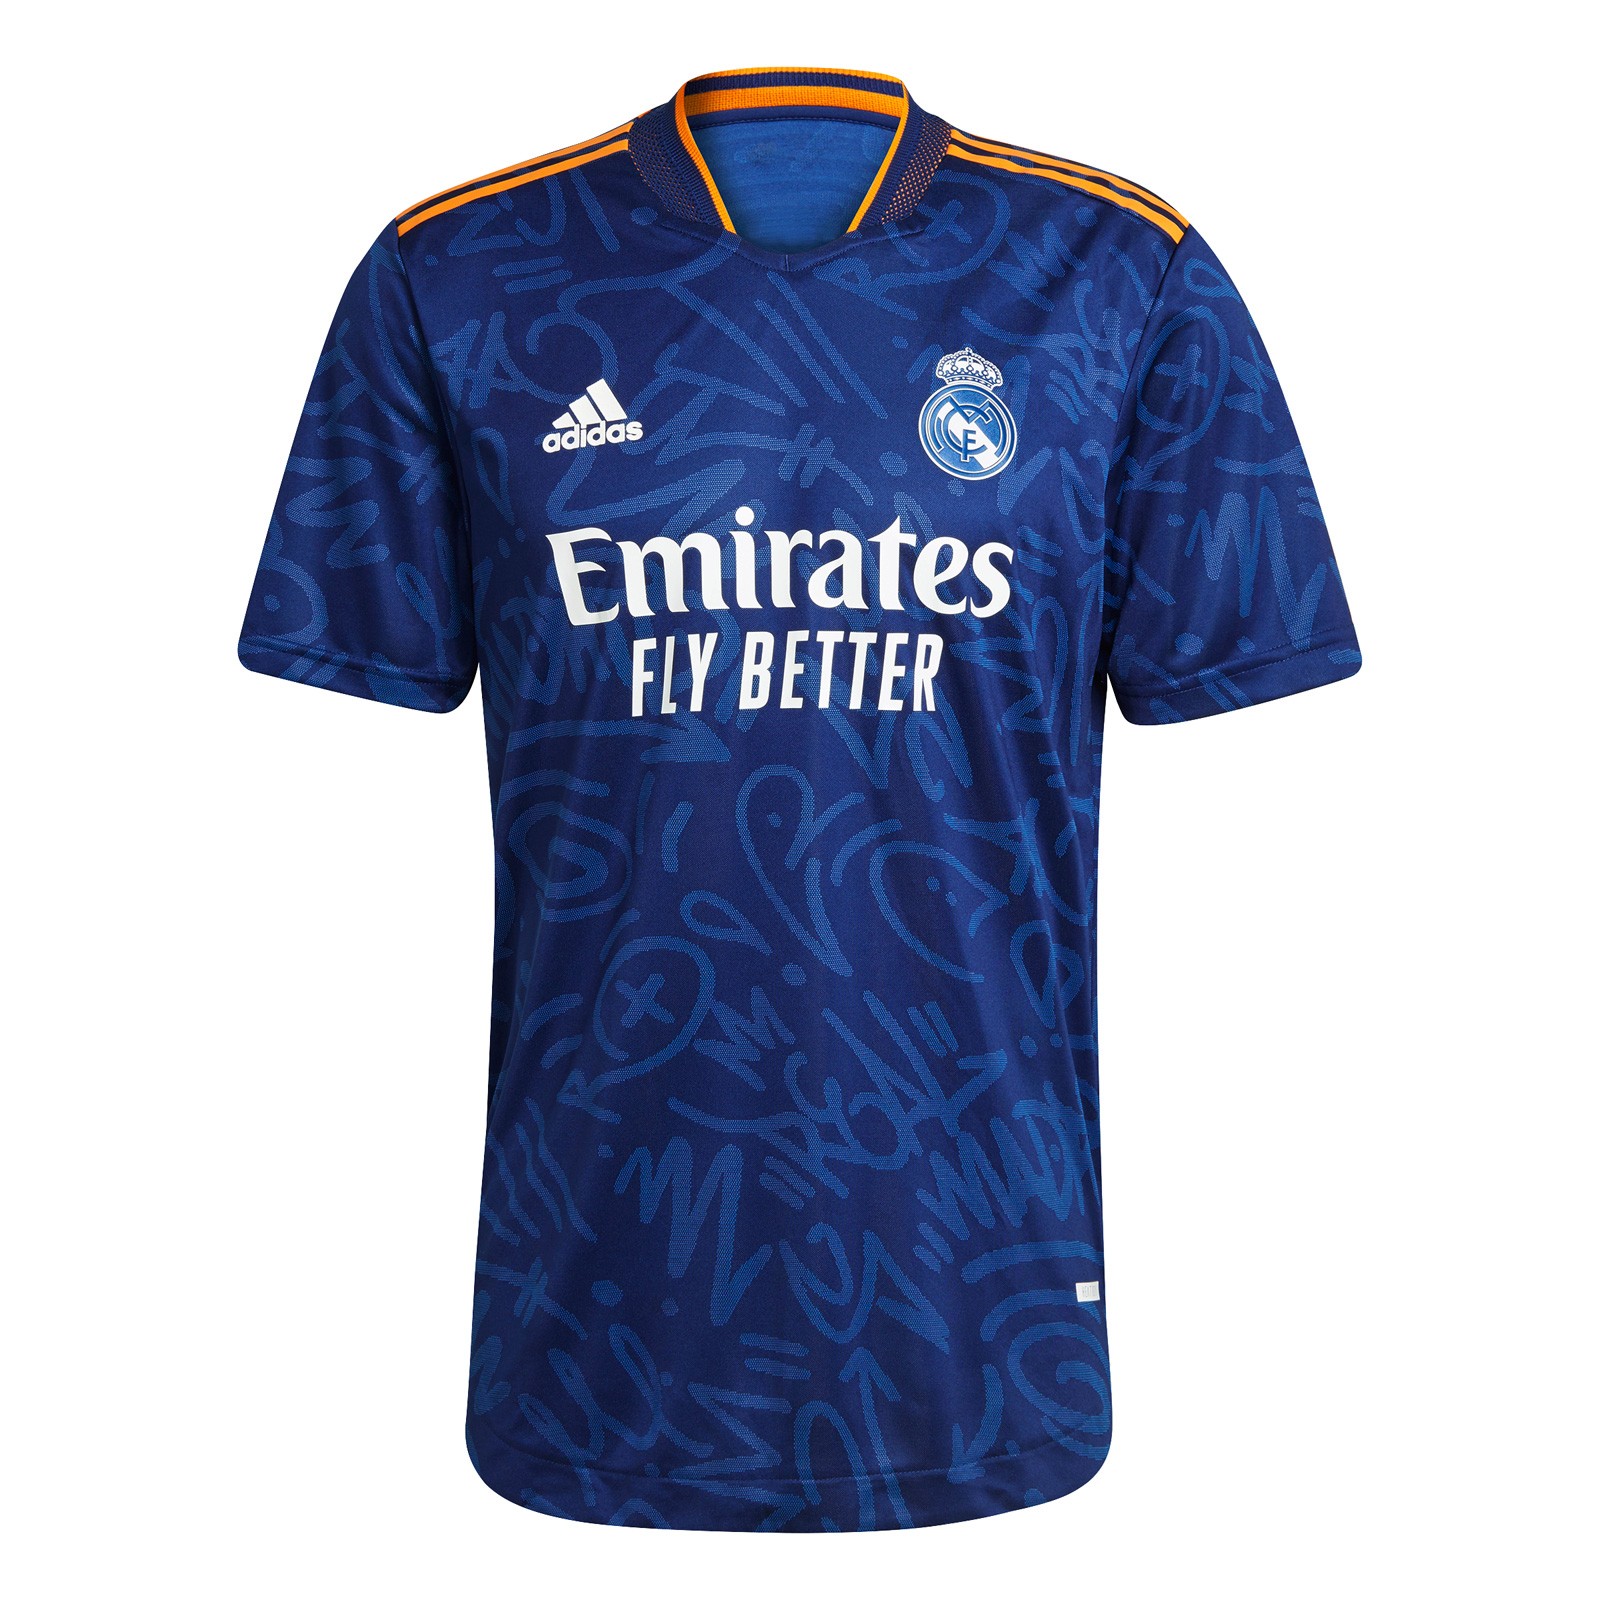 皇家马德里2021-22赛季球员版客场球衣